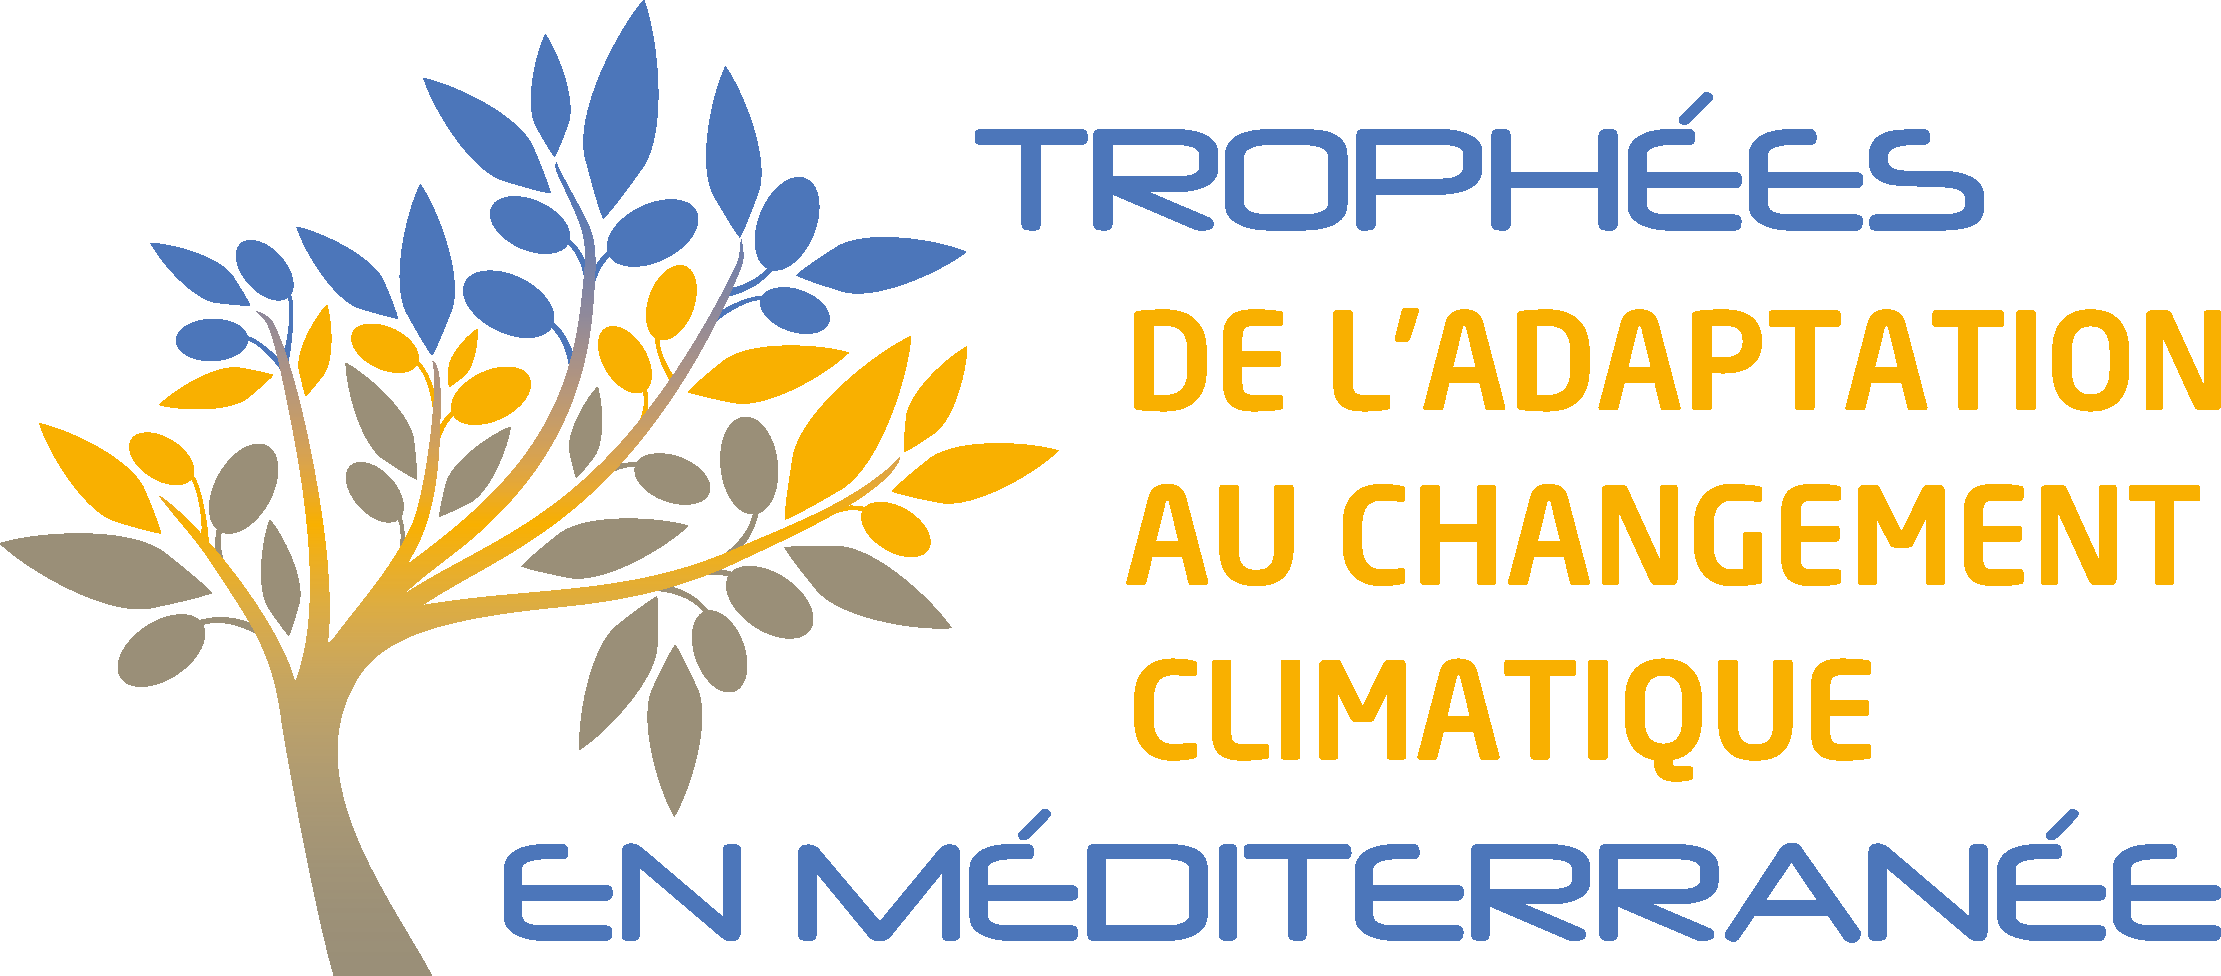 [VEILLE] Concours des trophées de l’adaptation au changement climatique en Méditerranée ouvert!